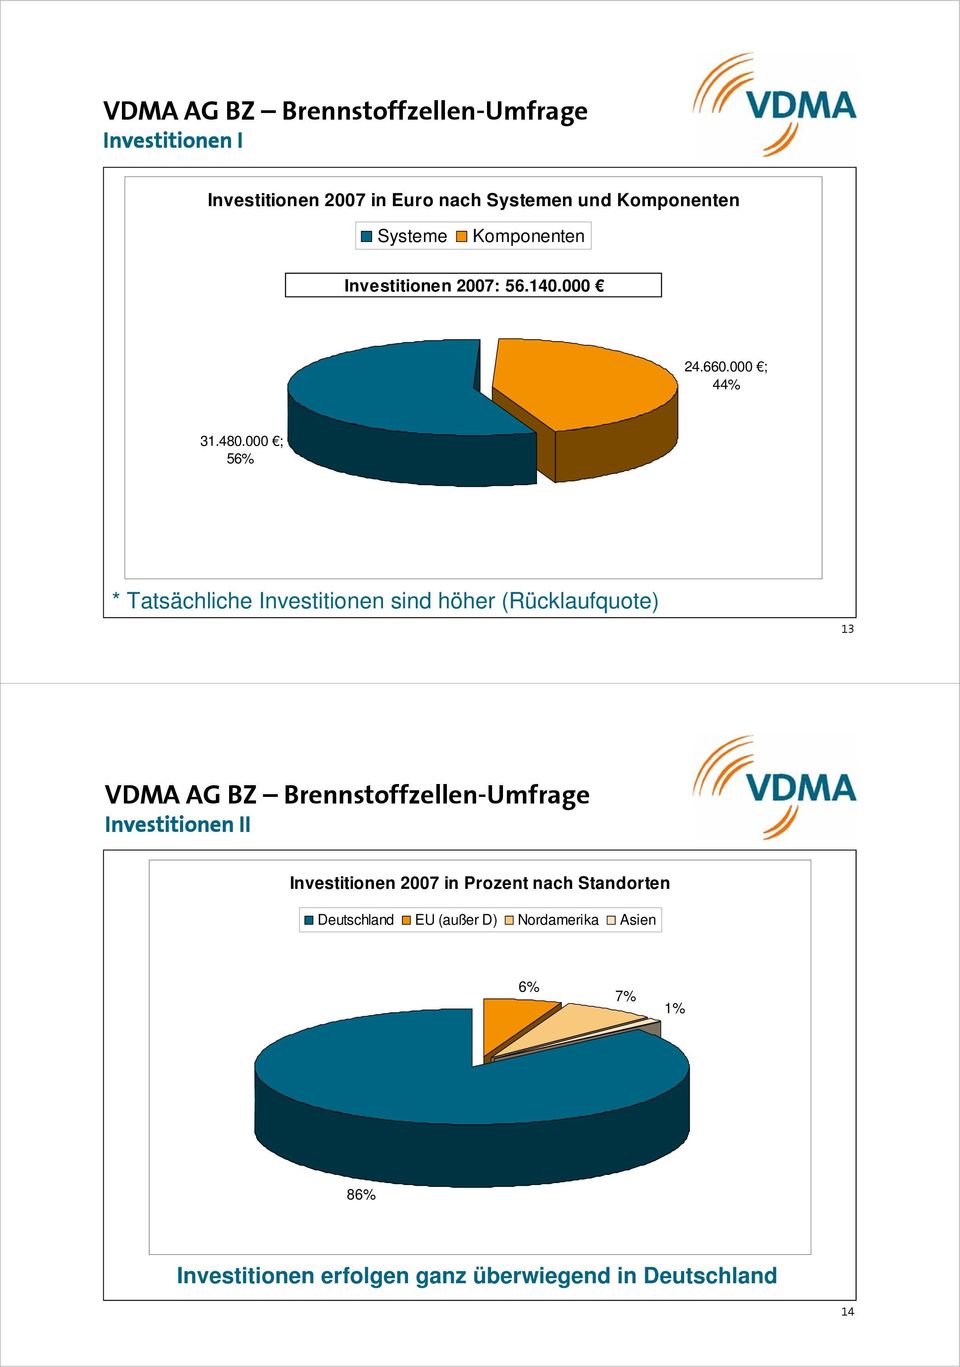 000 ; 56% * Tatsächliche Investitionen sind höher (Rücklaufquote) 13 VDMA AG BZ Brennstoffzellen-Umfrage